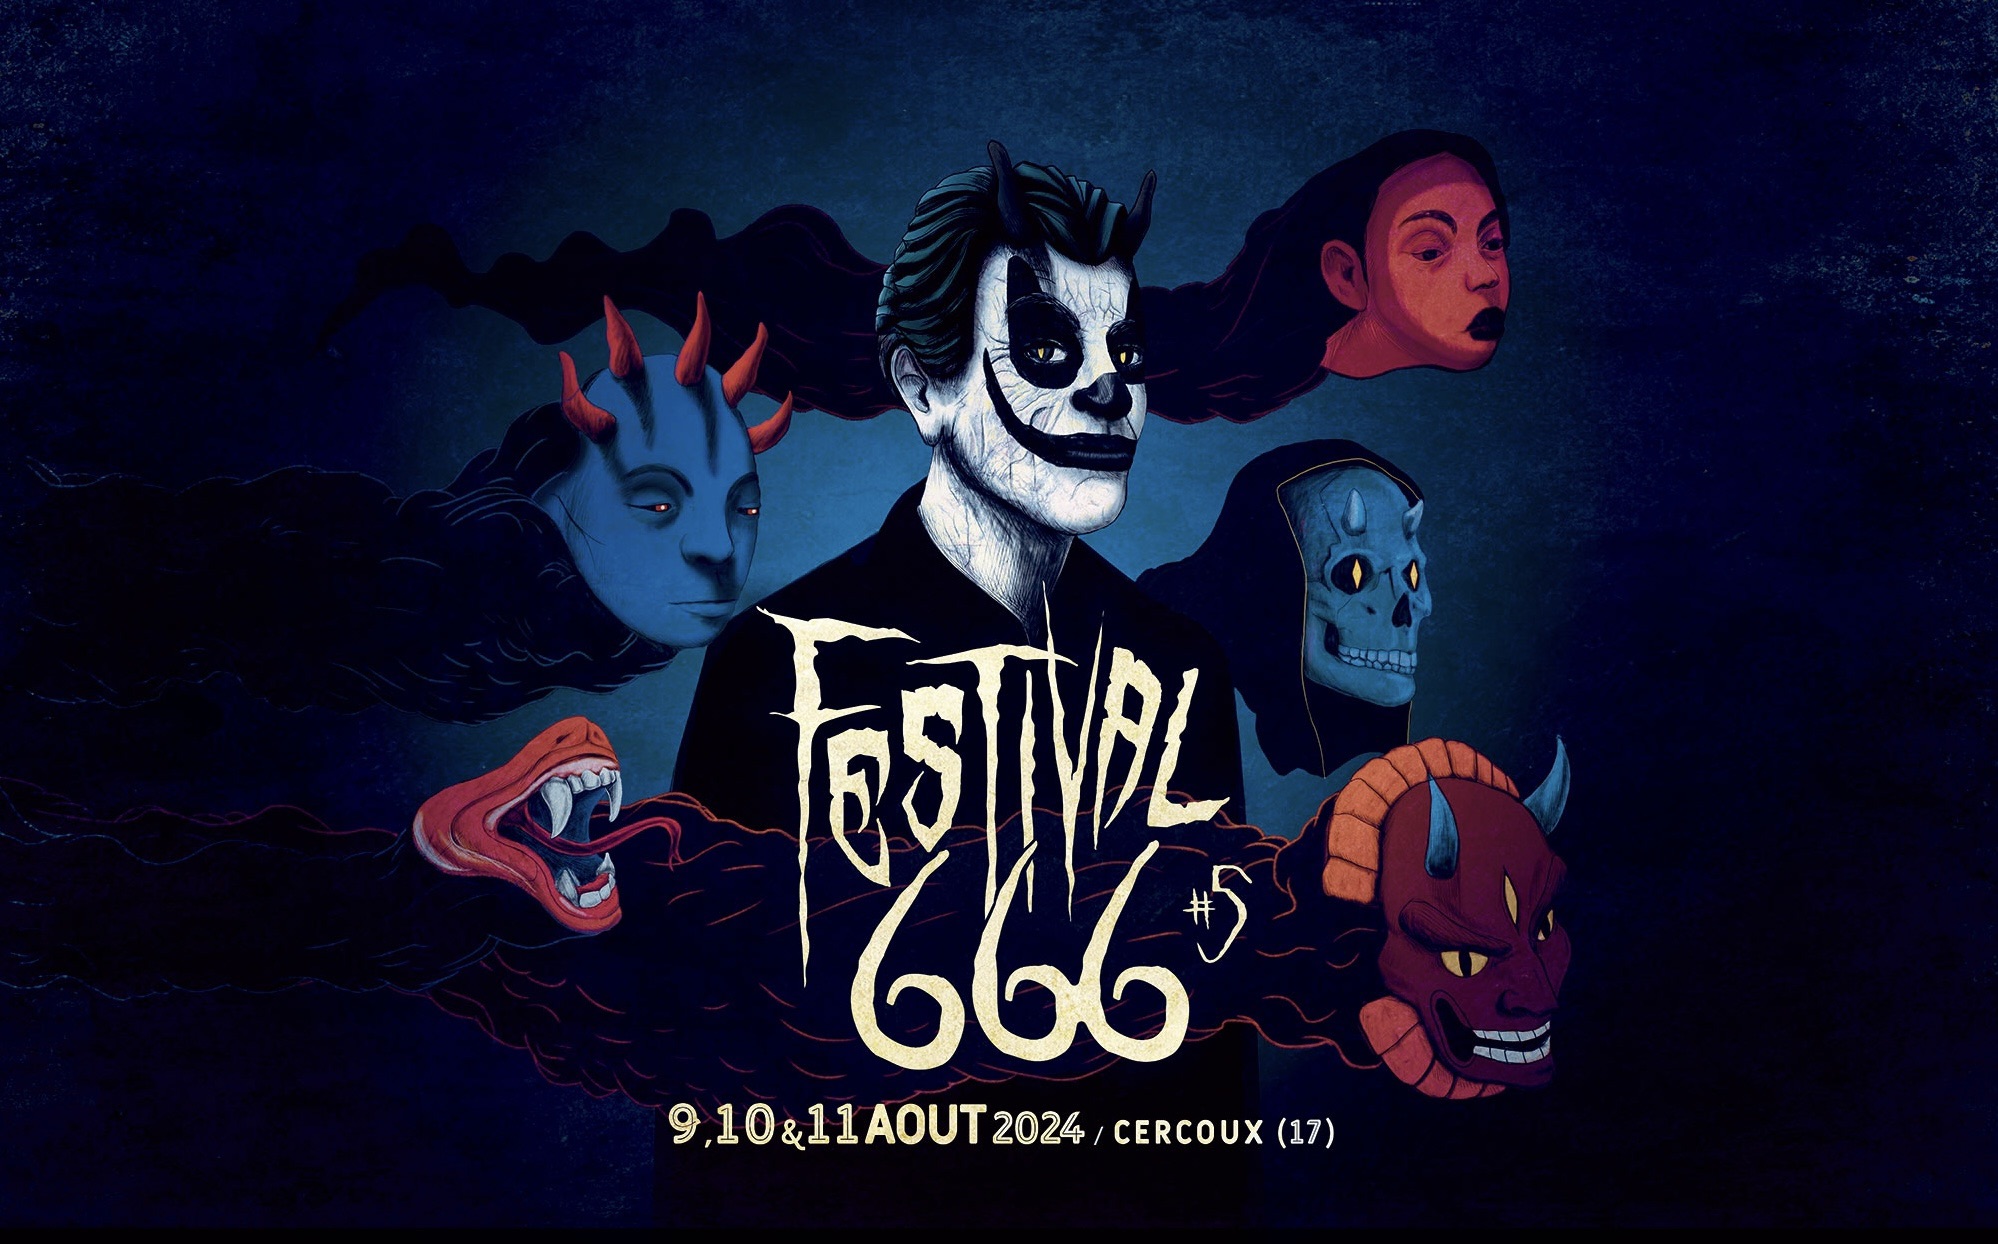 La 5e édition du Festival 666 